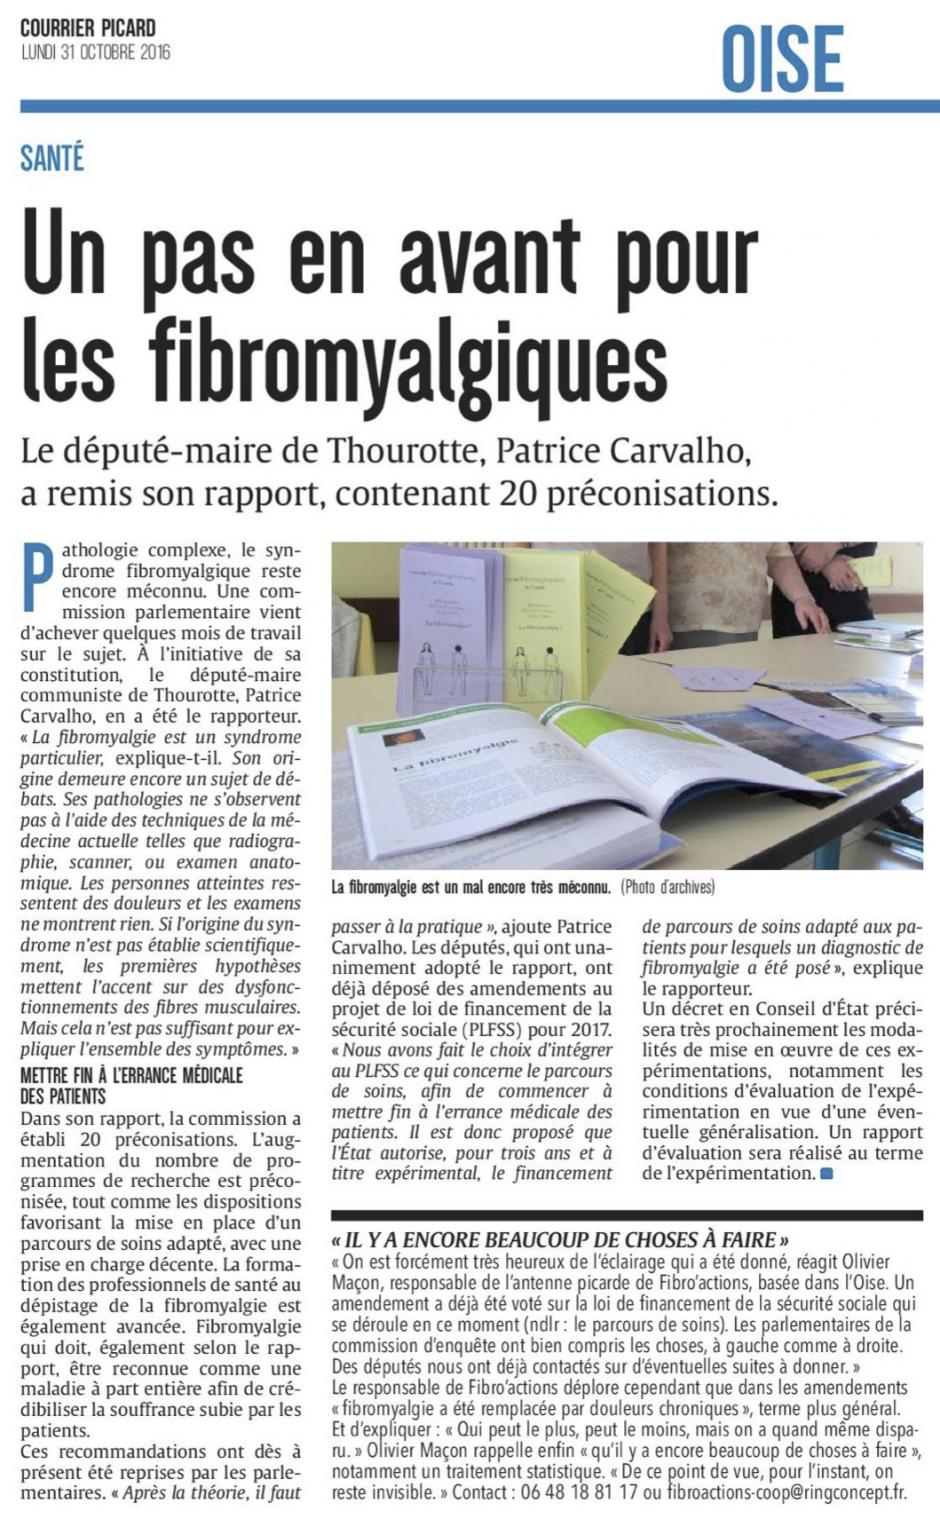 20161031-CP-France-Un pas en avant pour les fibromyalgiques